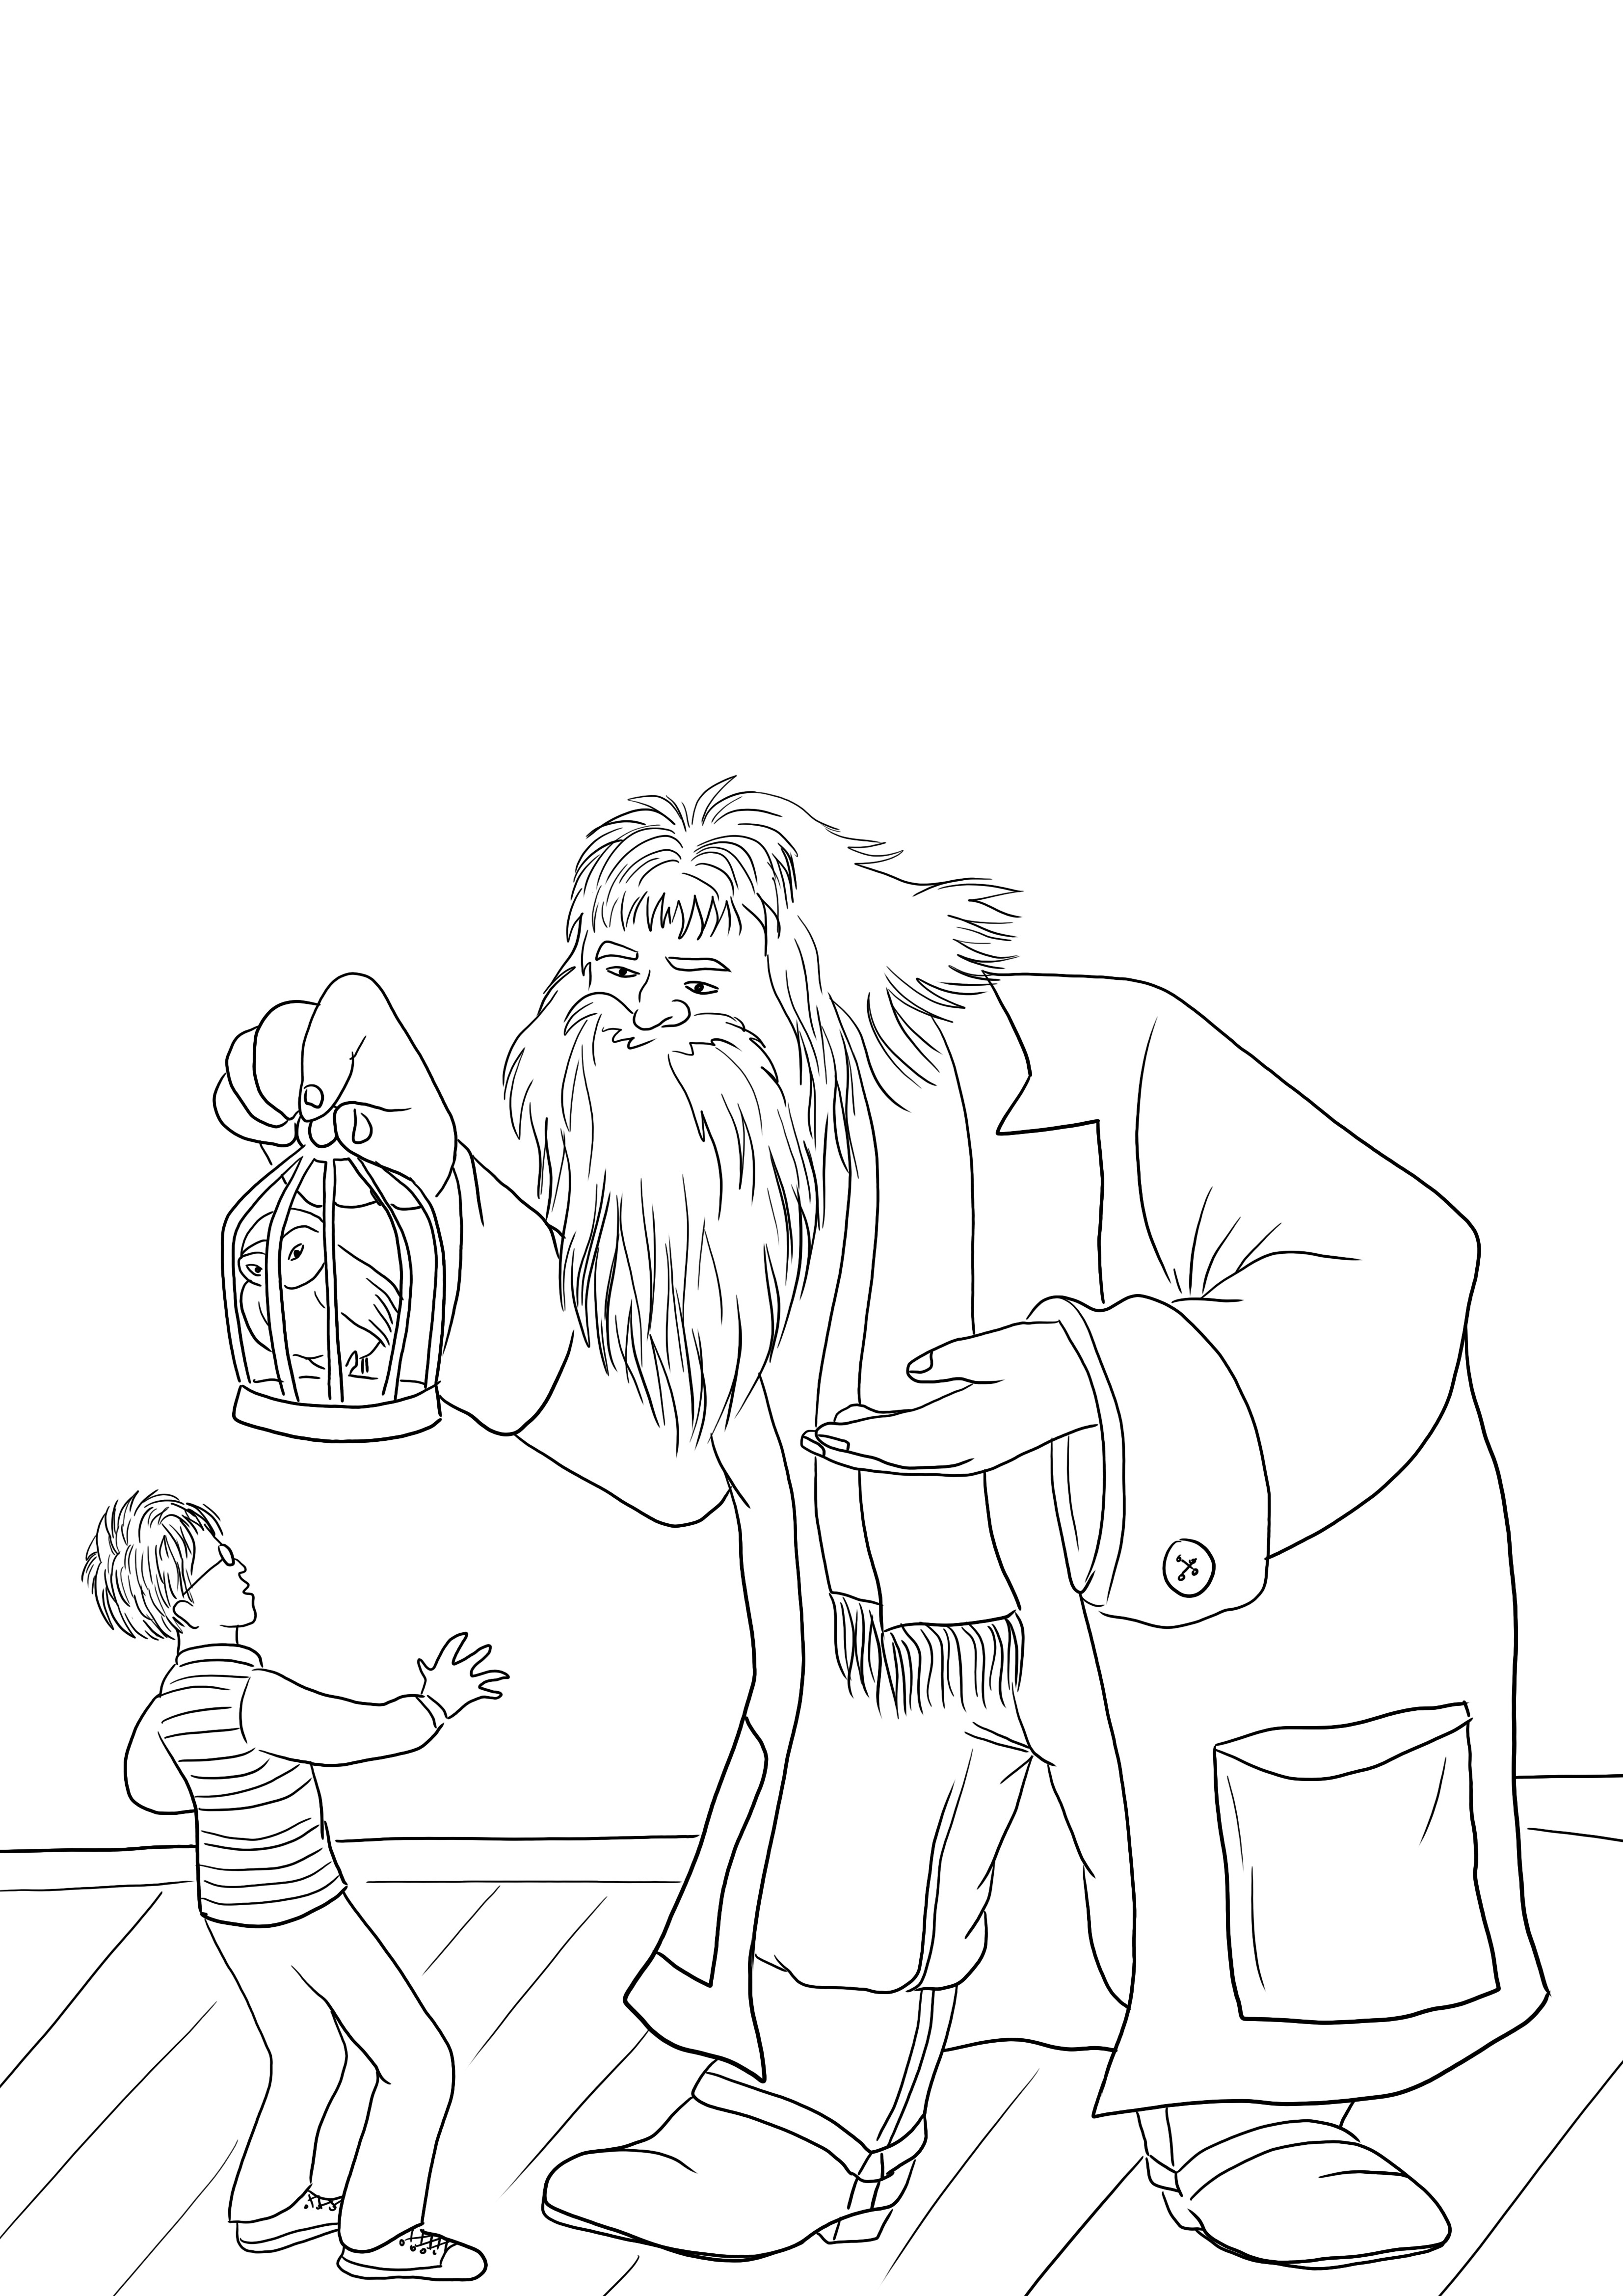 Hagrid ofrece un loro a Harry Potter para colorear imagen para descargar gratis